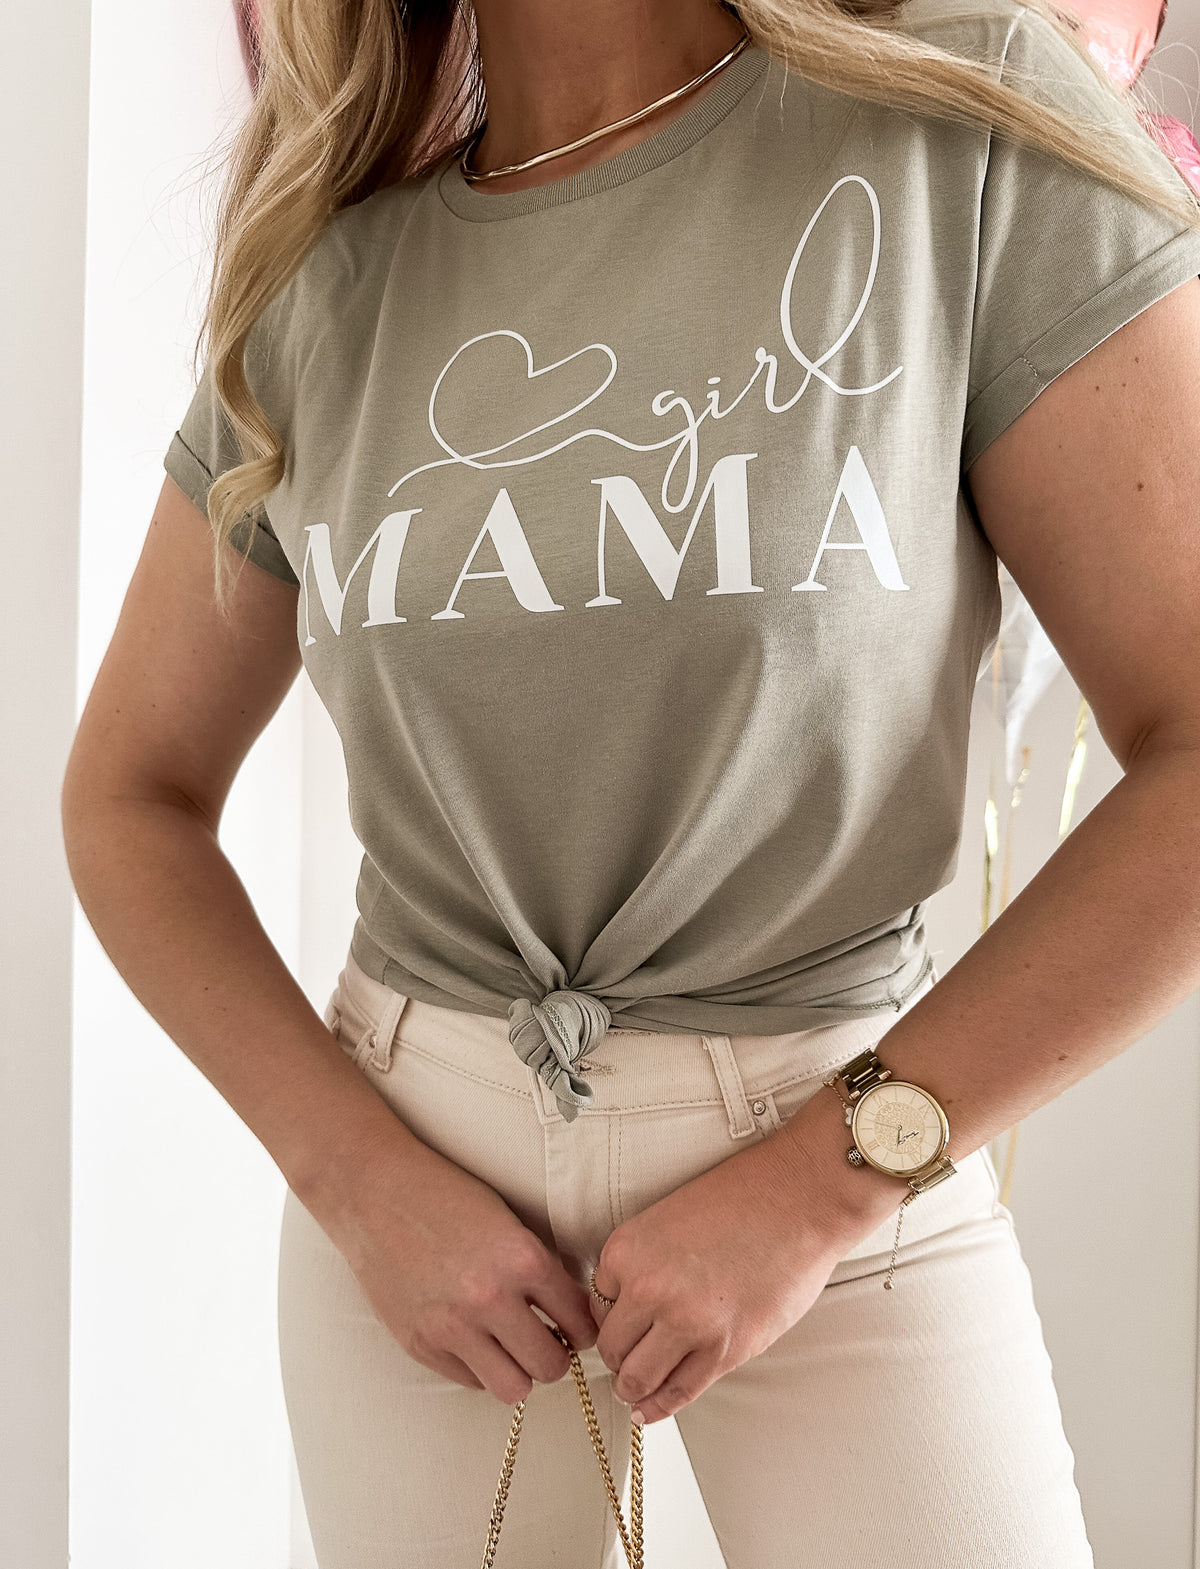 Boy / Girl Mama Shirt